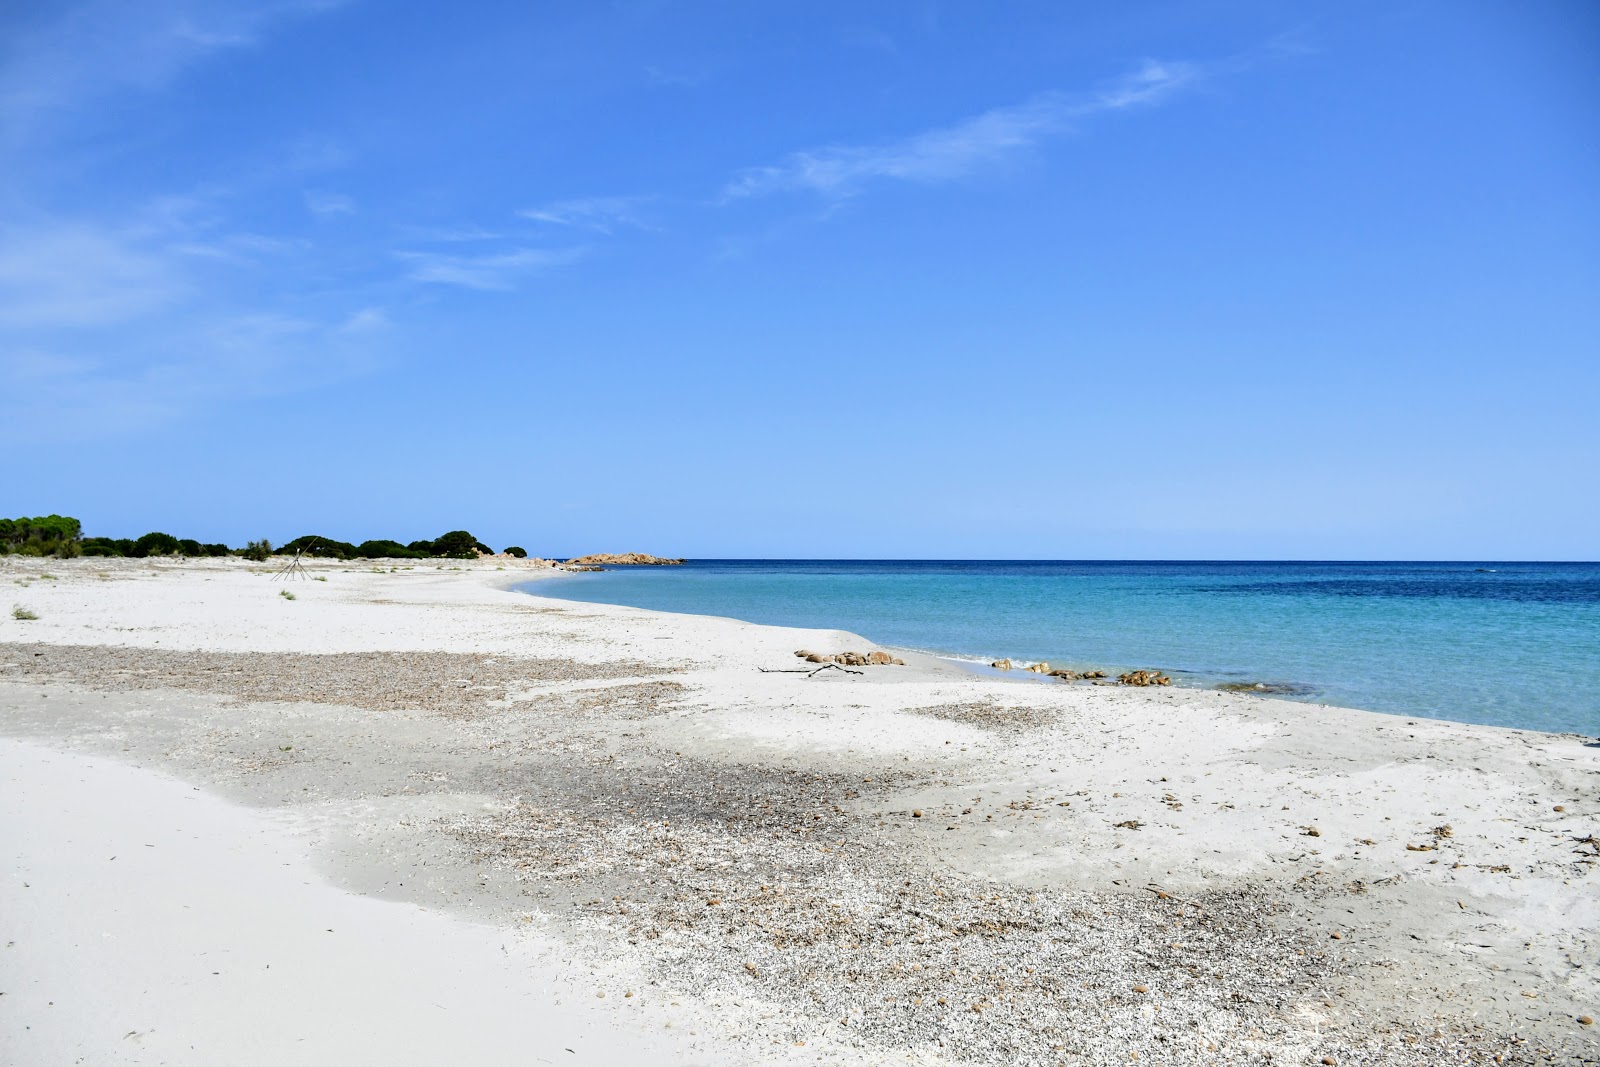 Valokuva Spiaggia Cannazzelluista. sijaitsee luonnonalueella